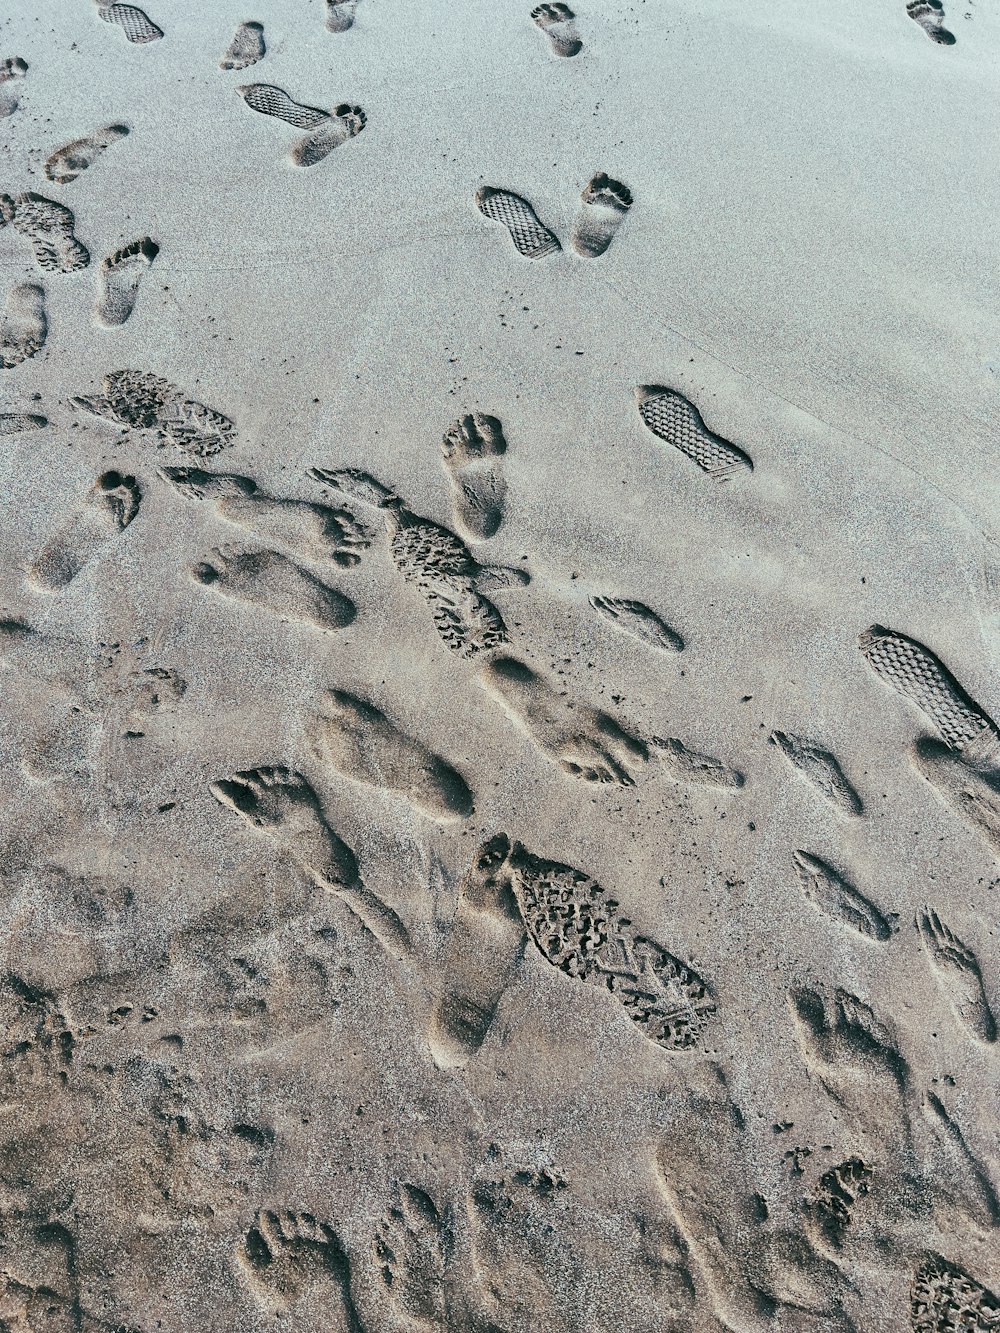 Huellas en la arena de una playa cerca del océano